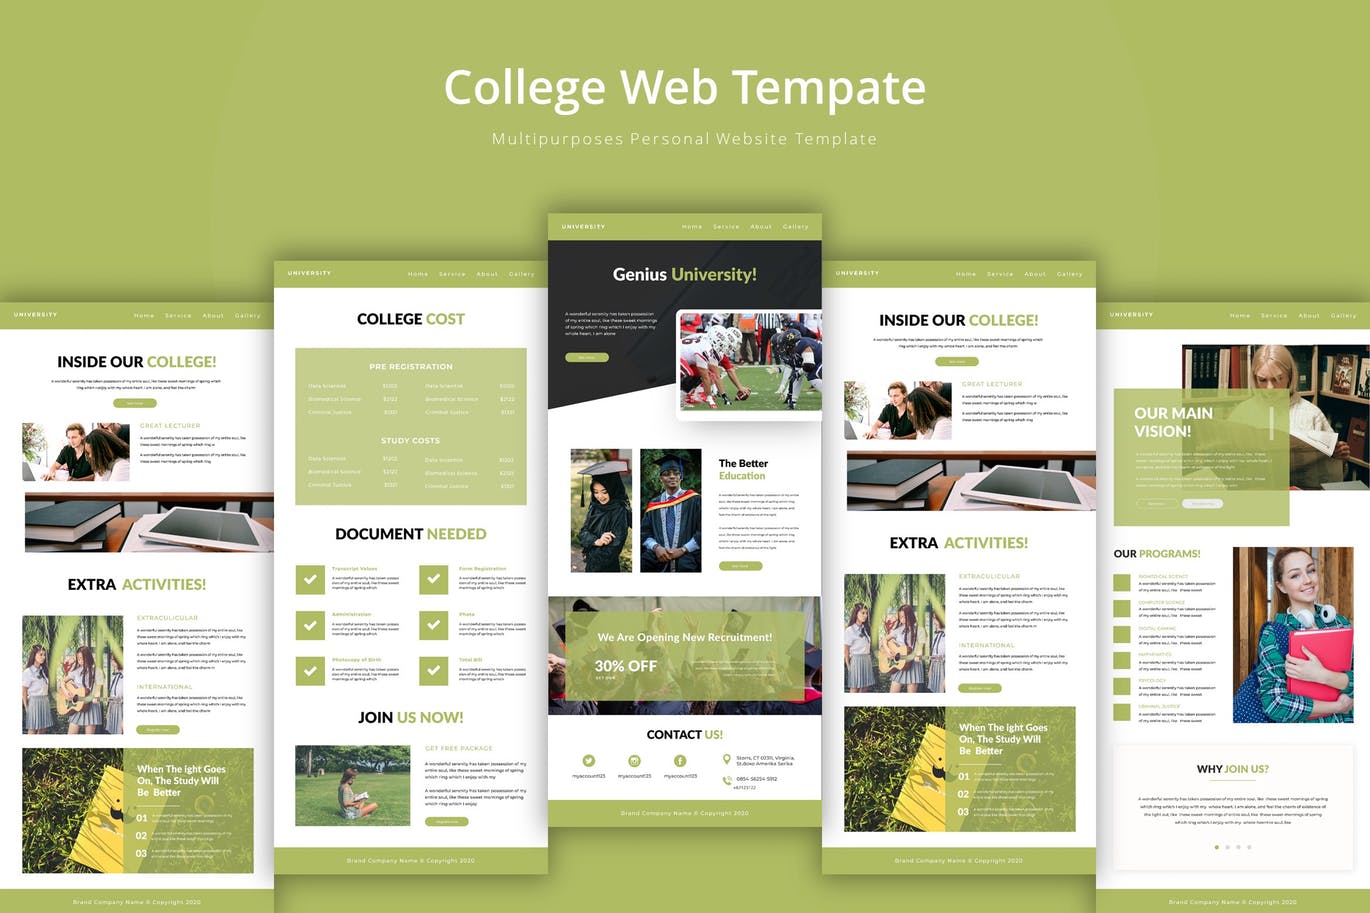 大学/学院教育网站设计蚂蚁素材精选模板 University Web Template插图